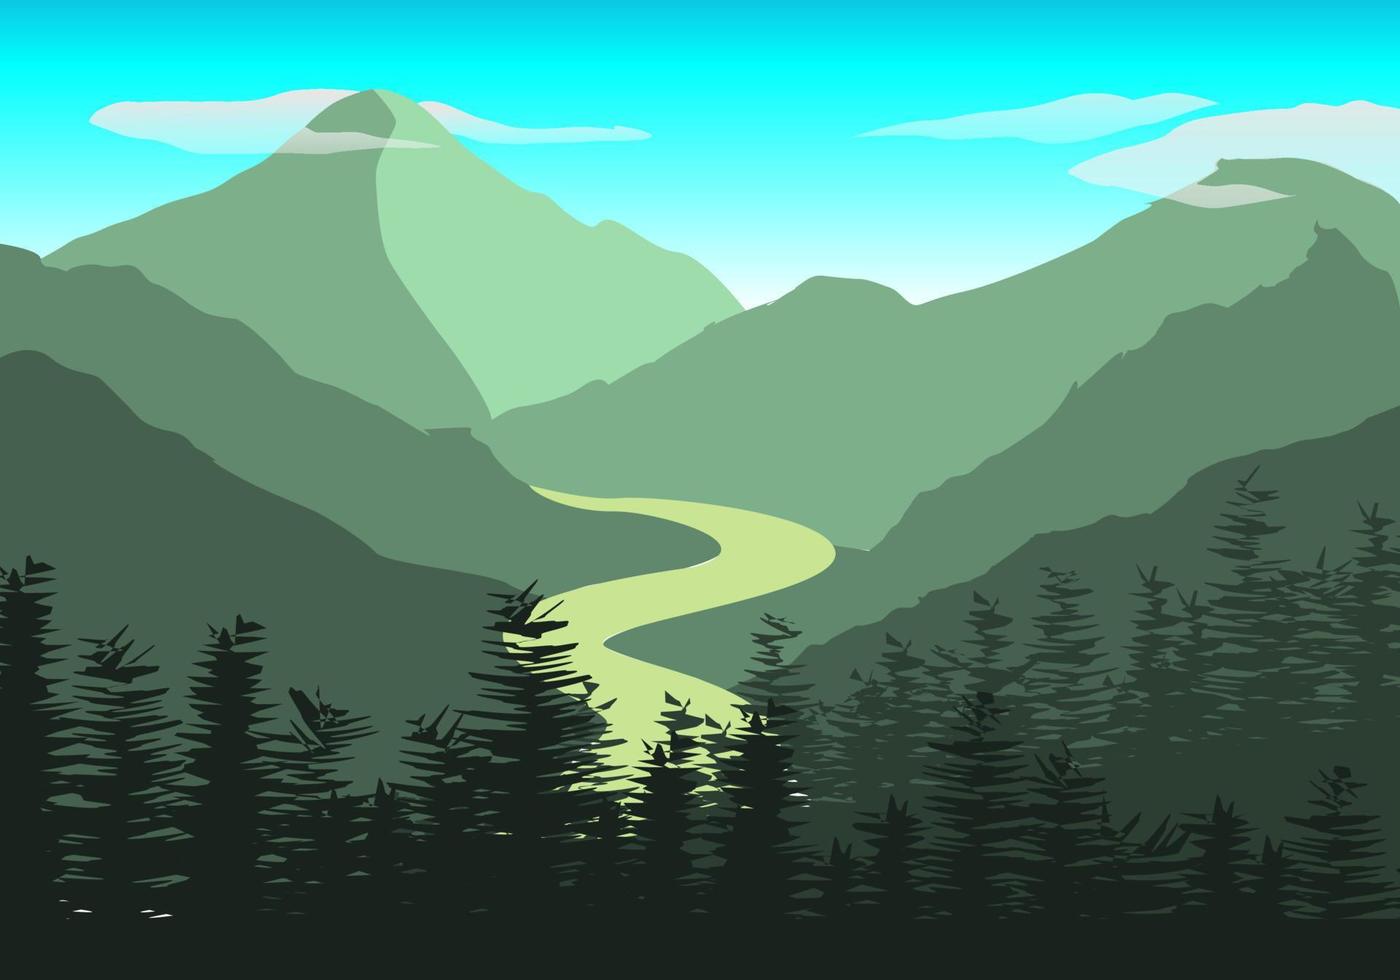 natur scen med flod och kullar, skog och berg, landskap platt illustration vektor